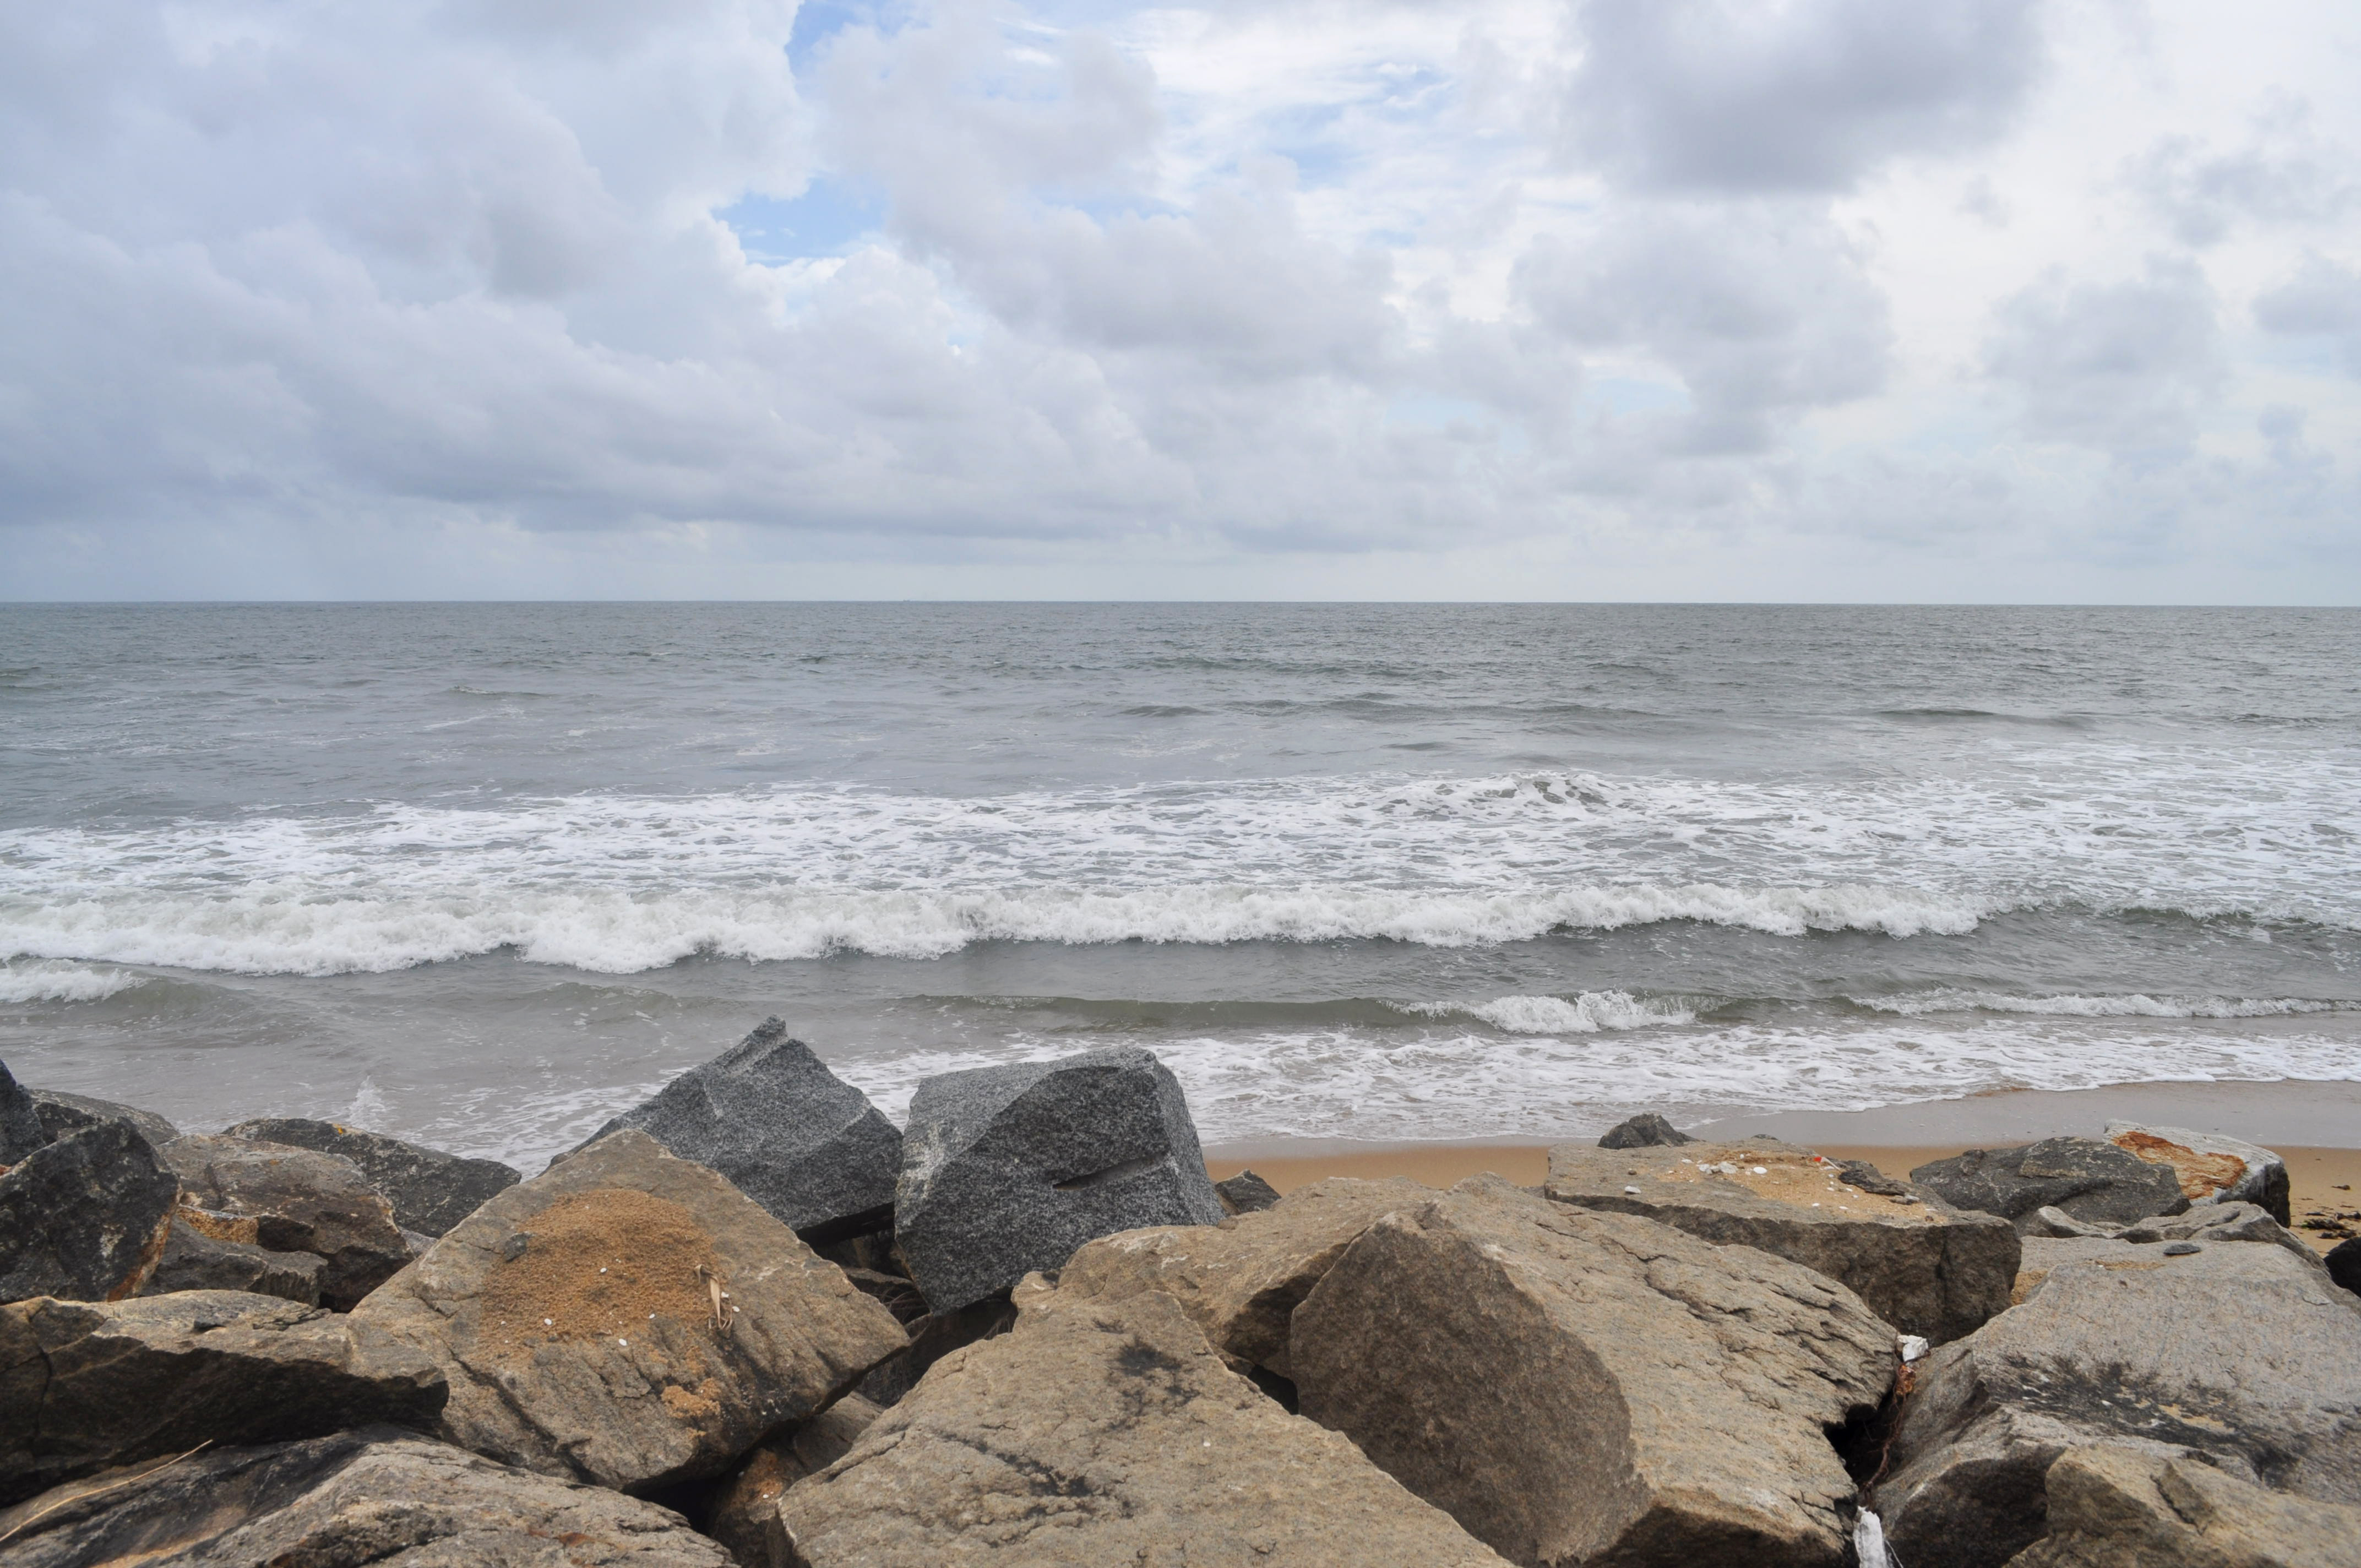 Stones on the beach, Beach, Ocean, Rocks, Sea, HQ Photo